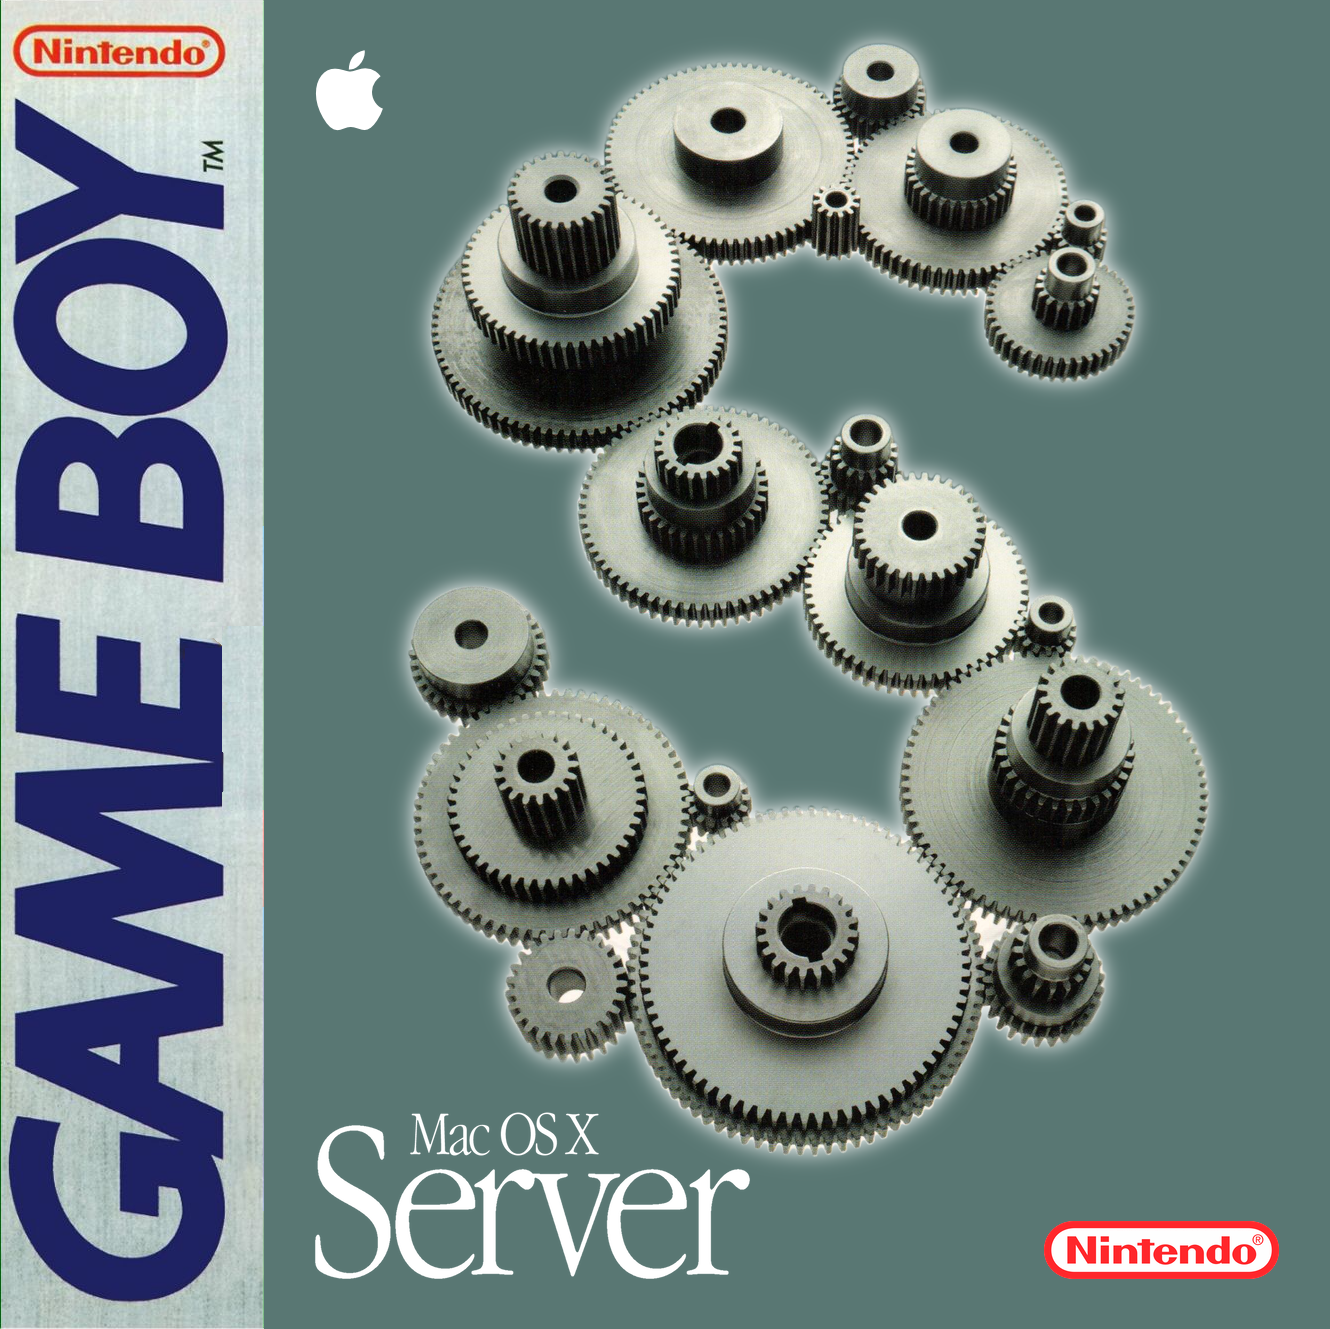 Mac OS X Server 1.0 for Nintendo Game Boy